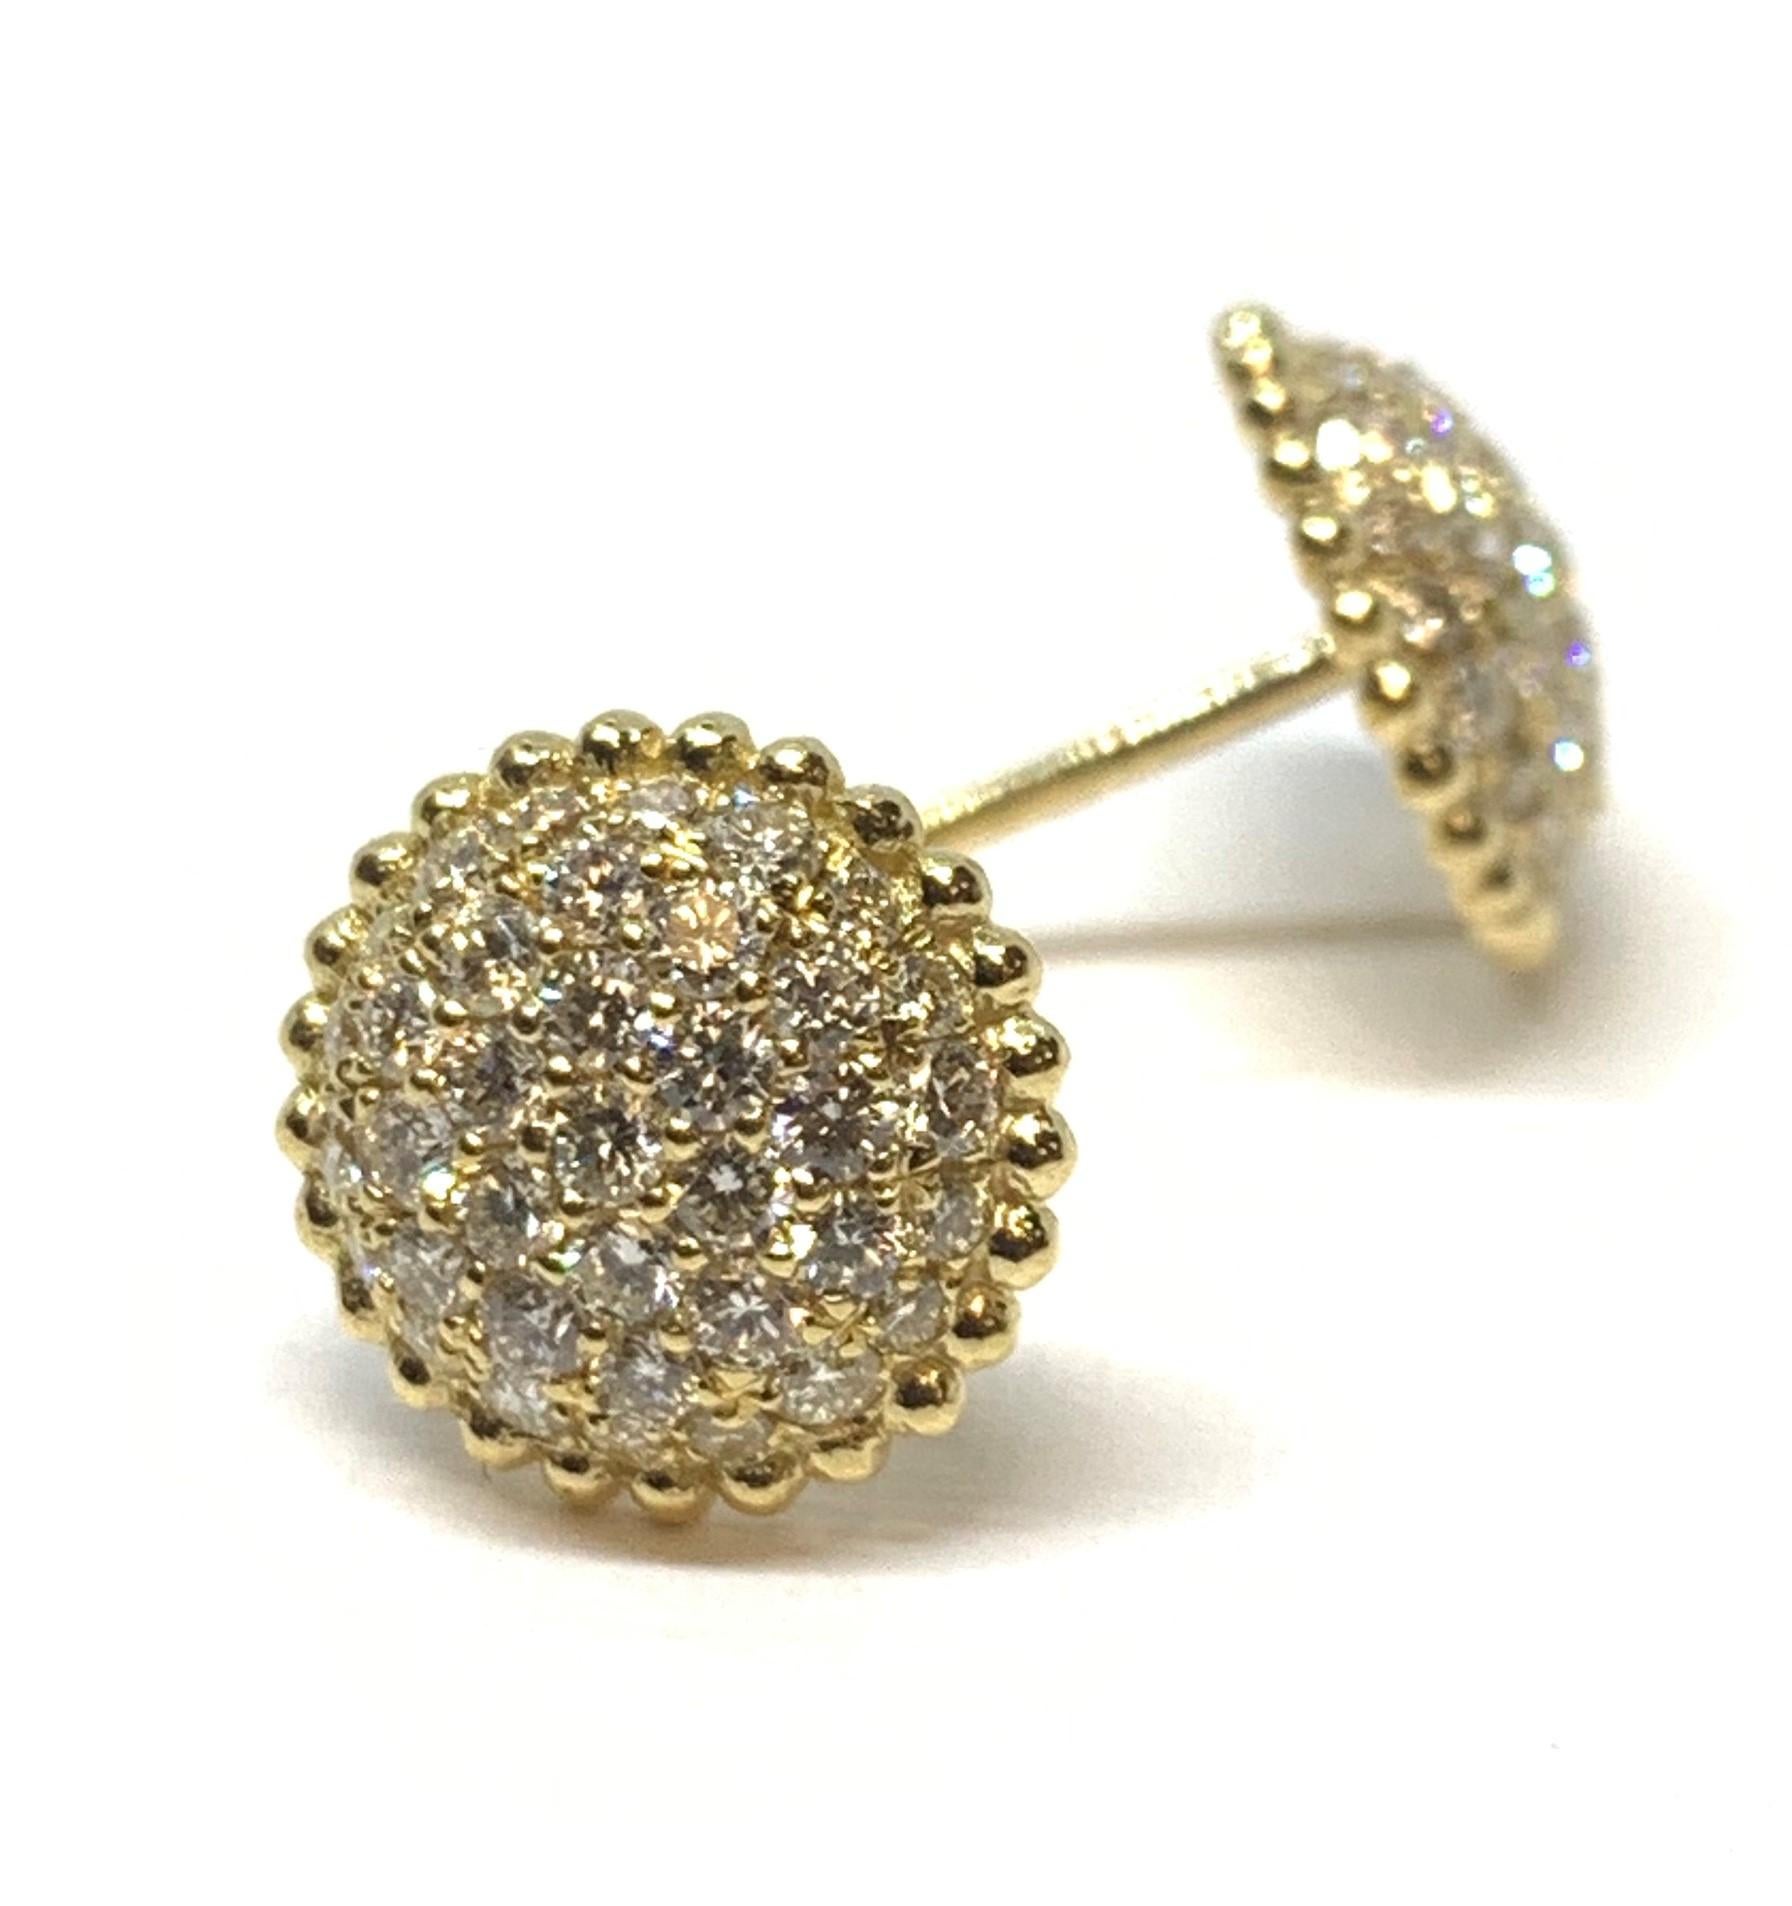 Diese hübschen, mit Diamanten besetzten Ohrringe werden Sie begeistern! Sie können sowohl am Tag als auch am Abend getragen werden und sind mit 18 Karat Gelbgold eingefasst. Insgesamt gibt es 74 runde Diamanten im Brillantschliff mit einem